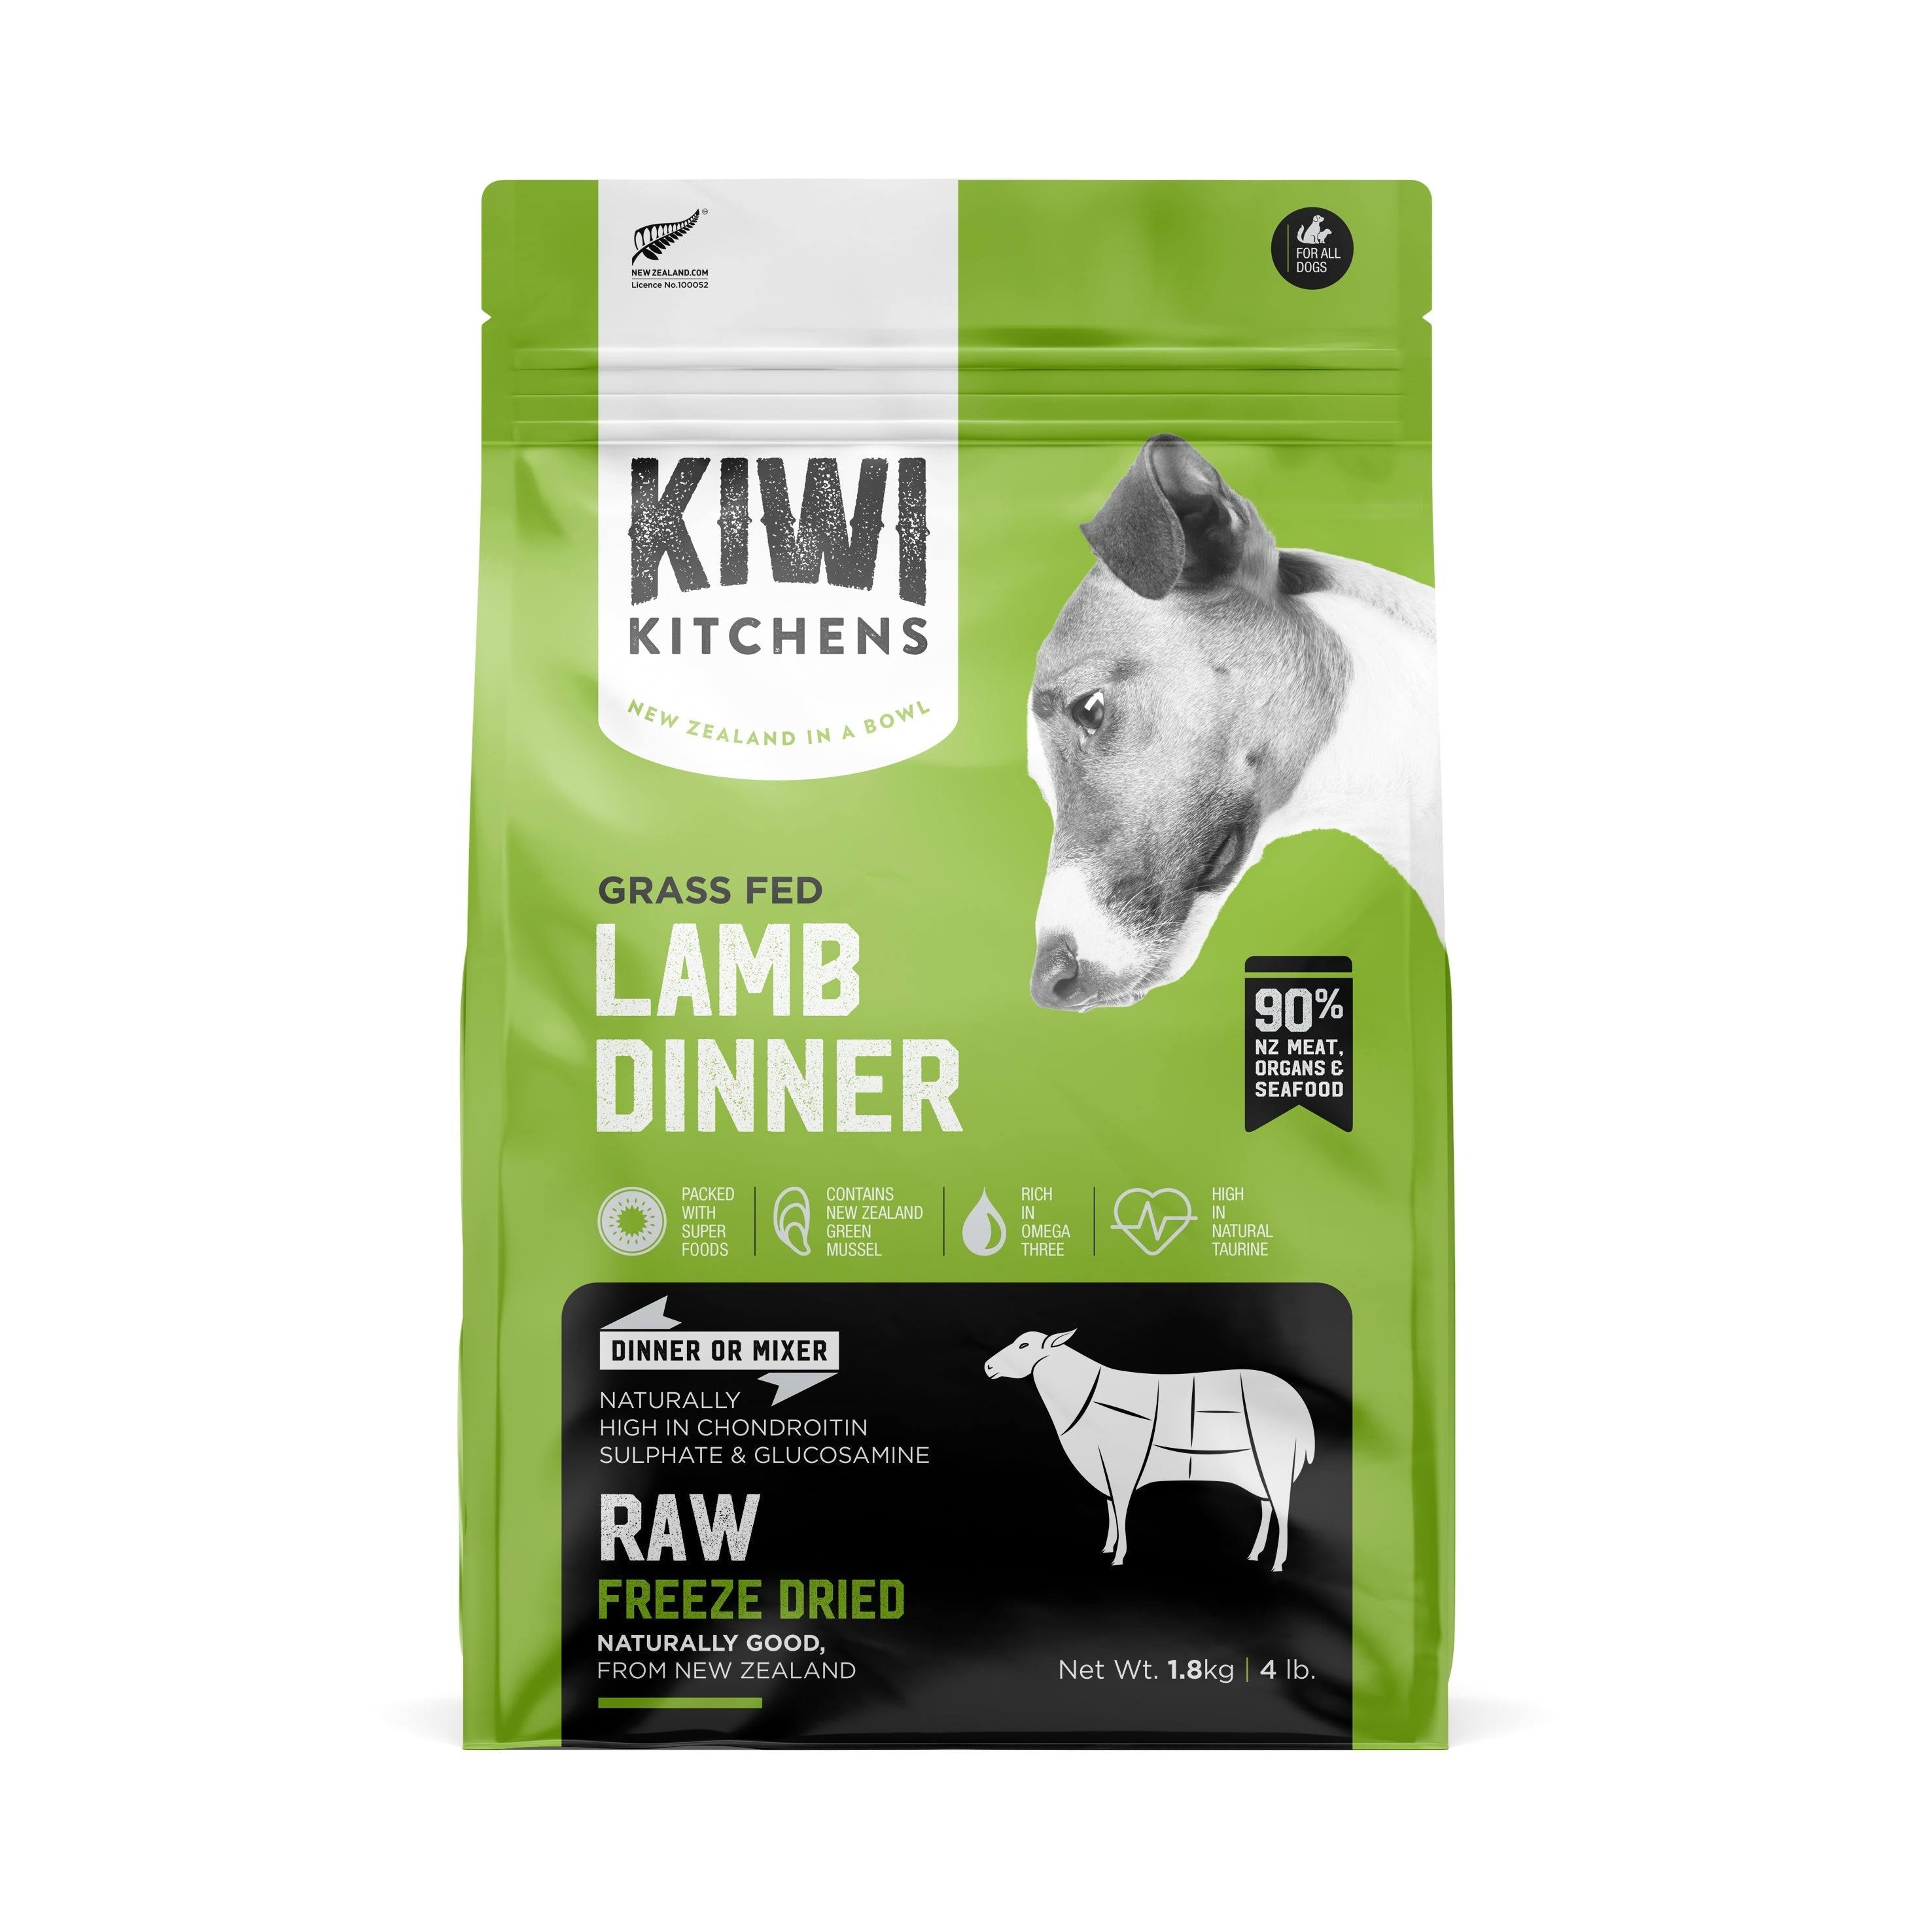 Kiwi Kitchens Grass Fed Lamb Dinner Raw Freeze Dried Dog Food